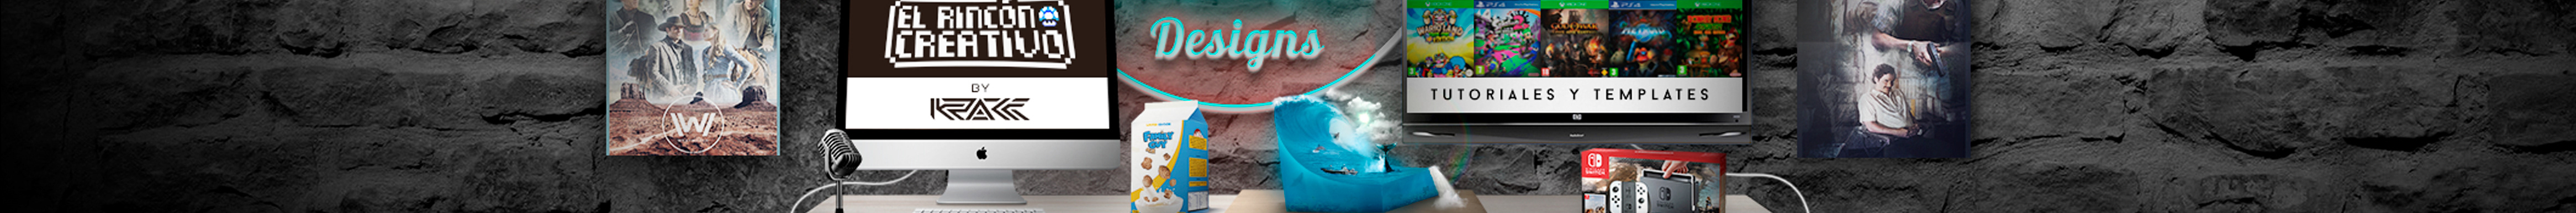 Krakk Designs's profile banner